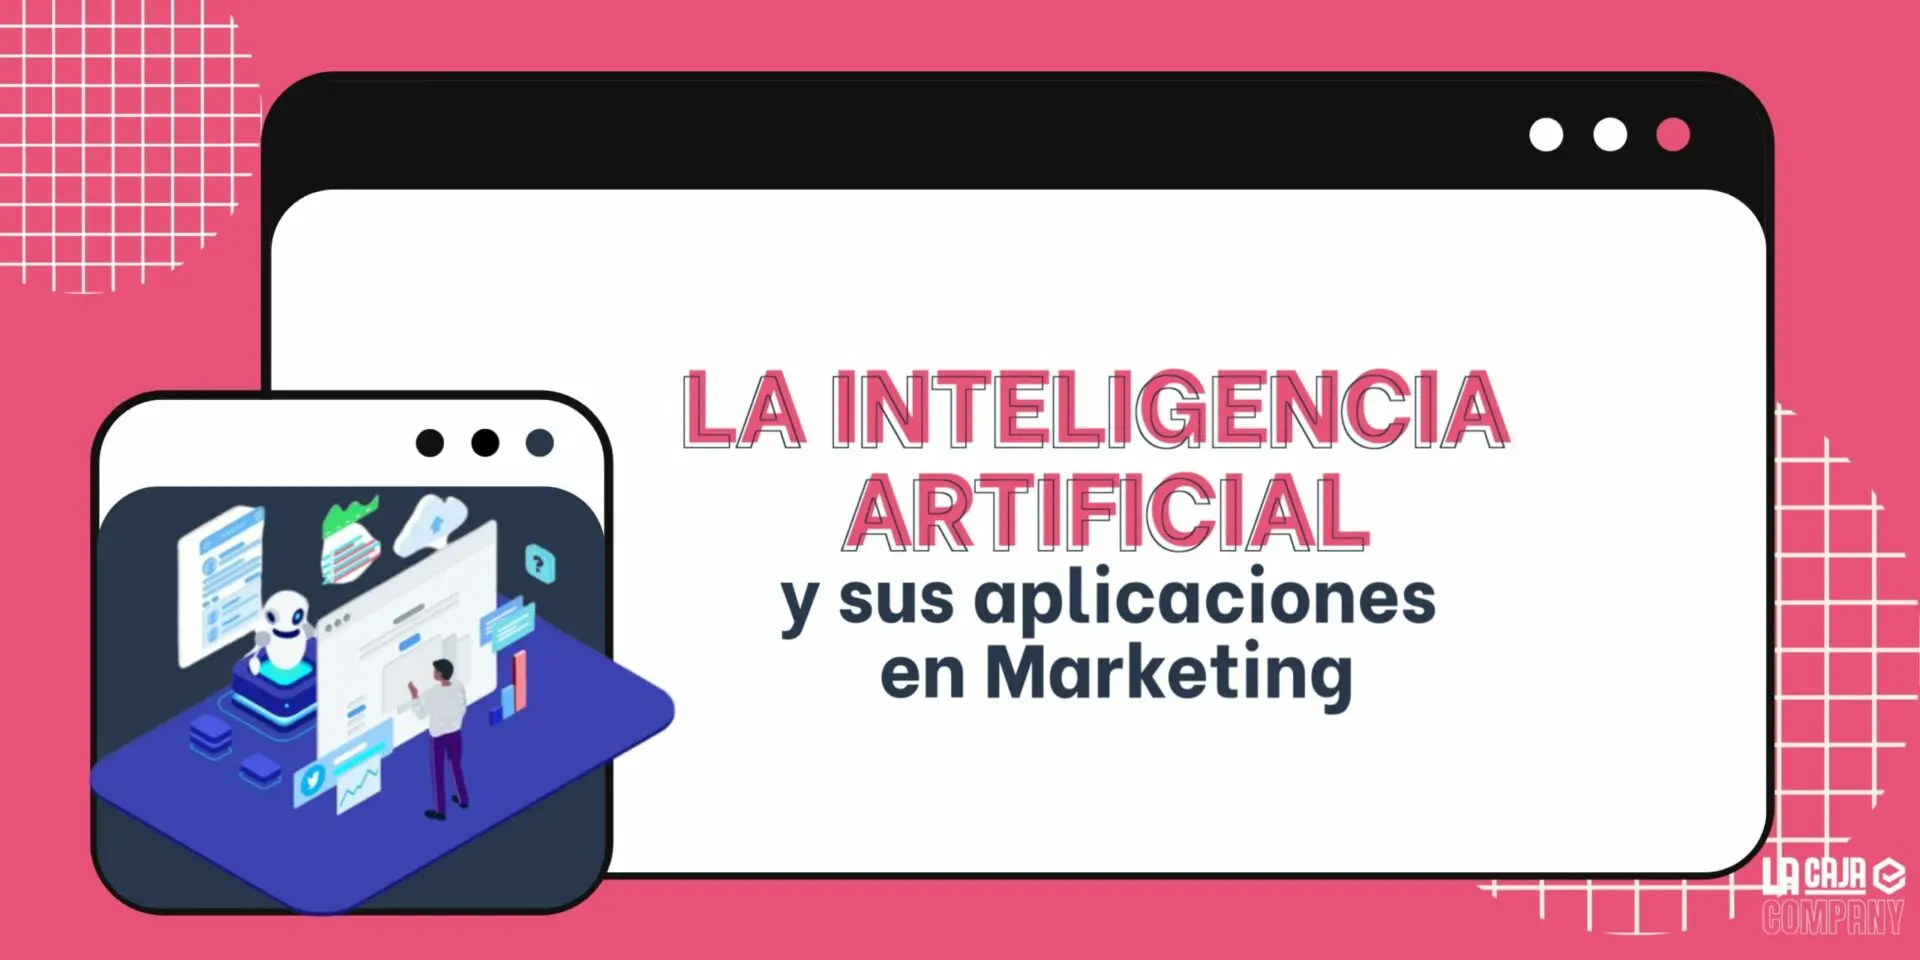 ejemplos de inteligencia artificial en marketing - Cómo se puede utilizar la IA inteligencia artificial en el análisis de datos para marketing ejemplos de herramientas